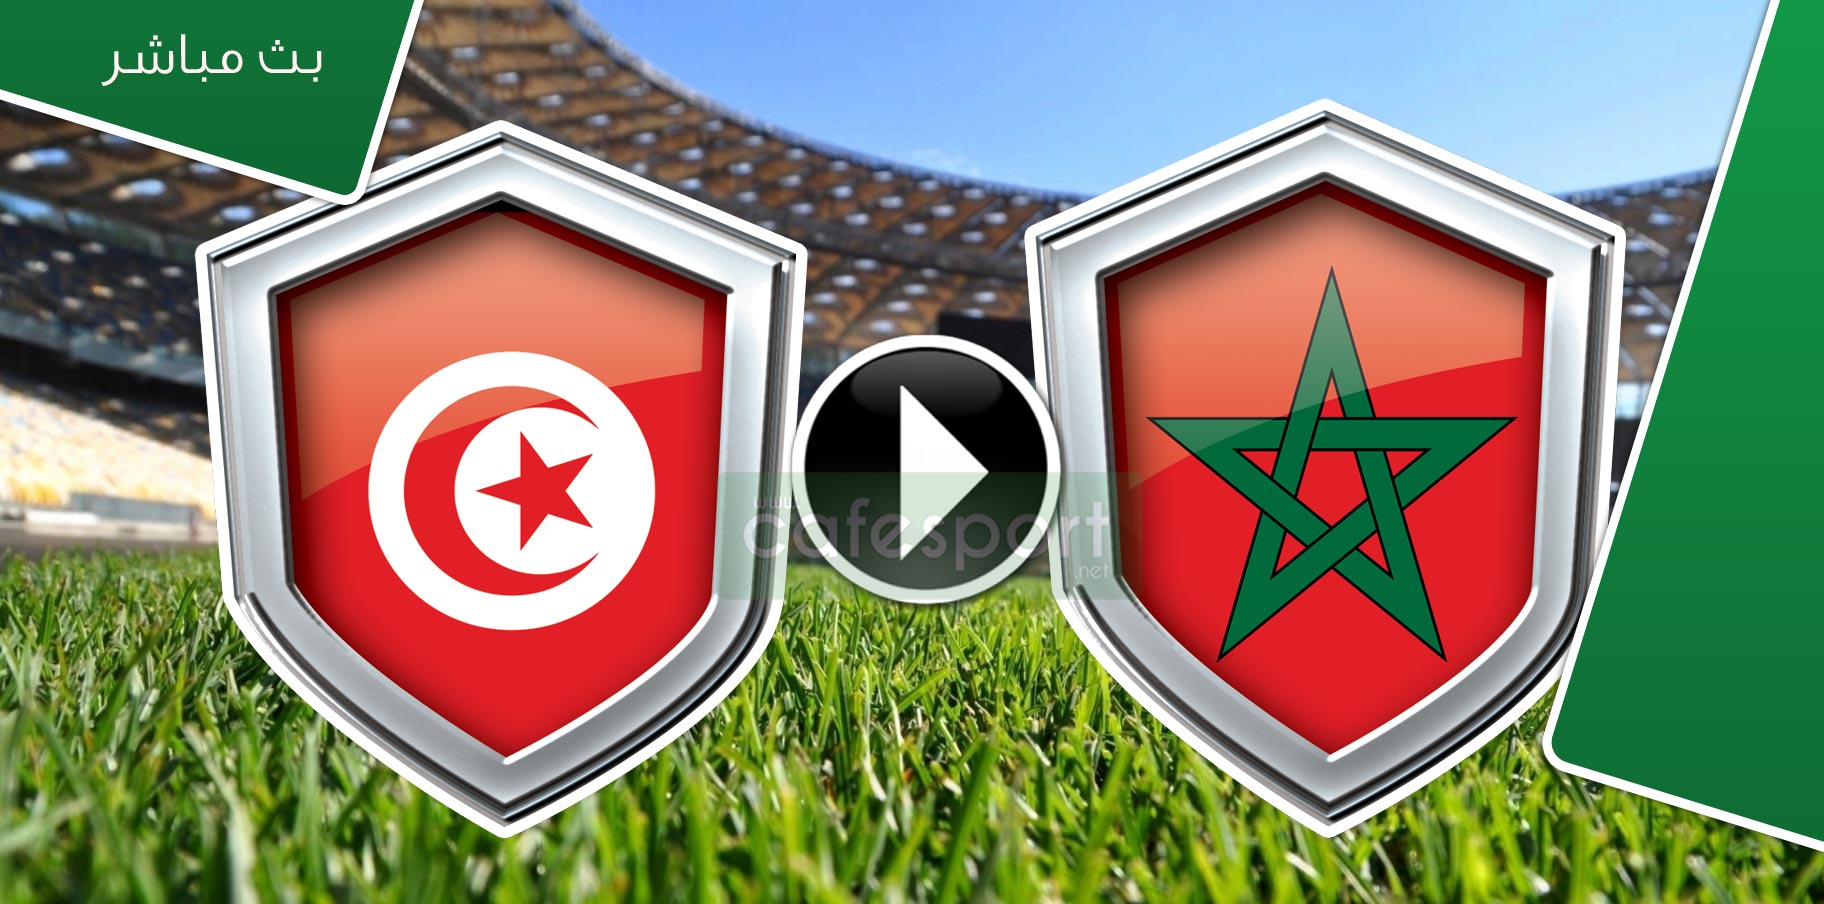 بث مباشر لمباراة مغرب -تونس